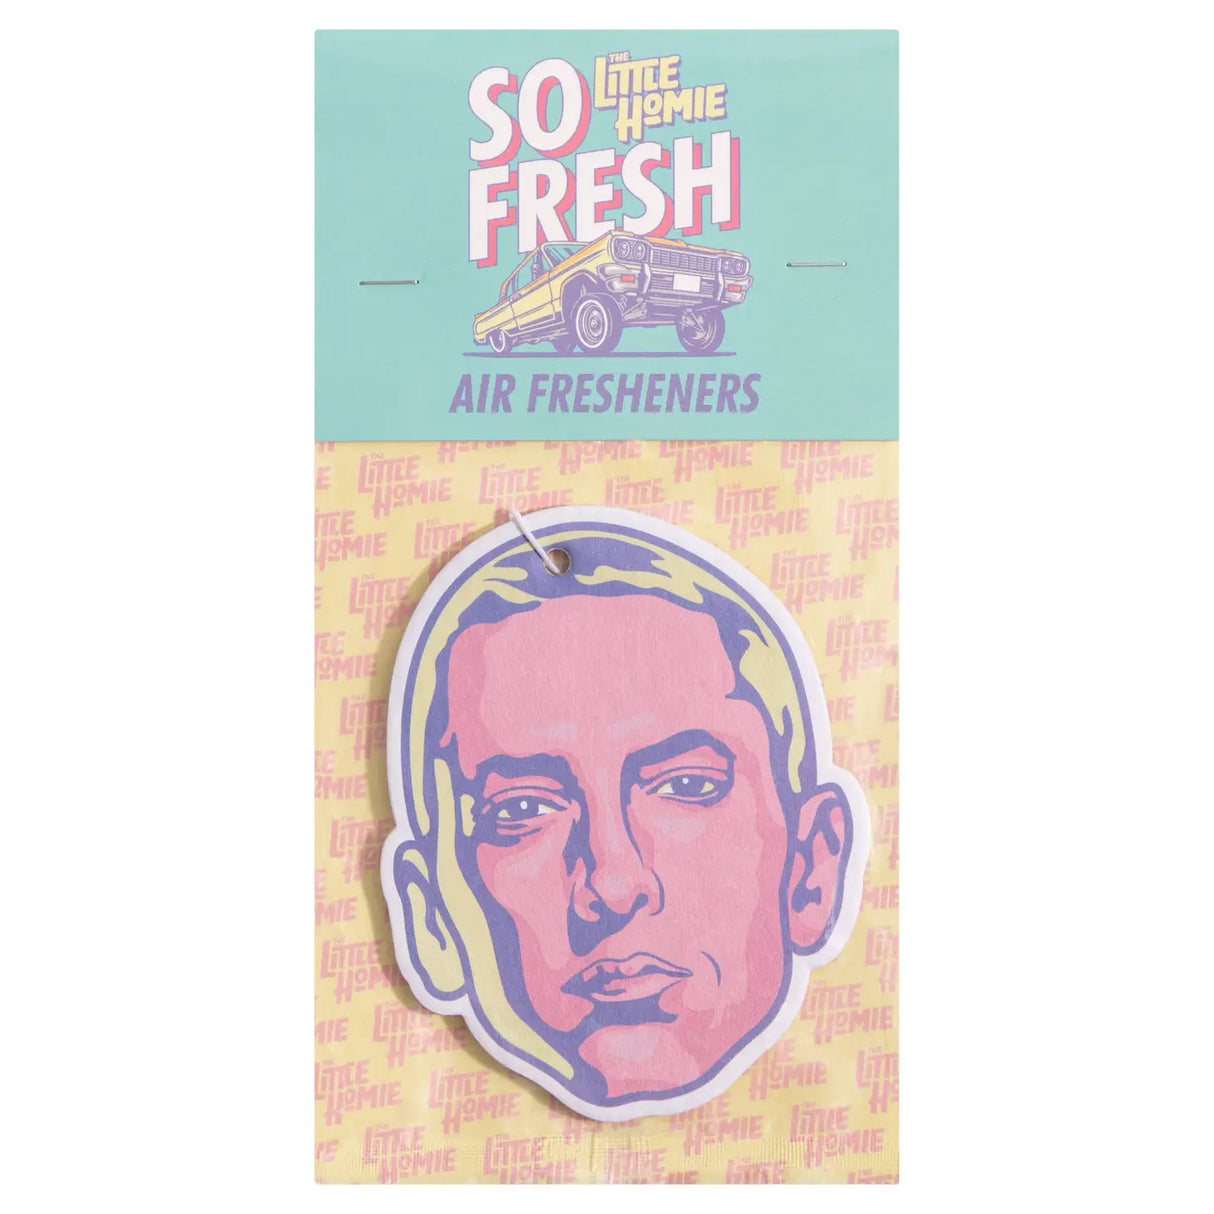 So Fresh Air Freshener - Eminem